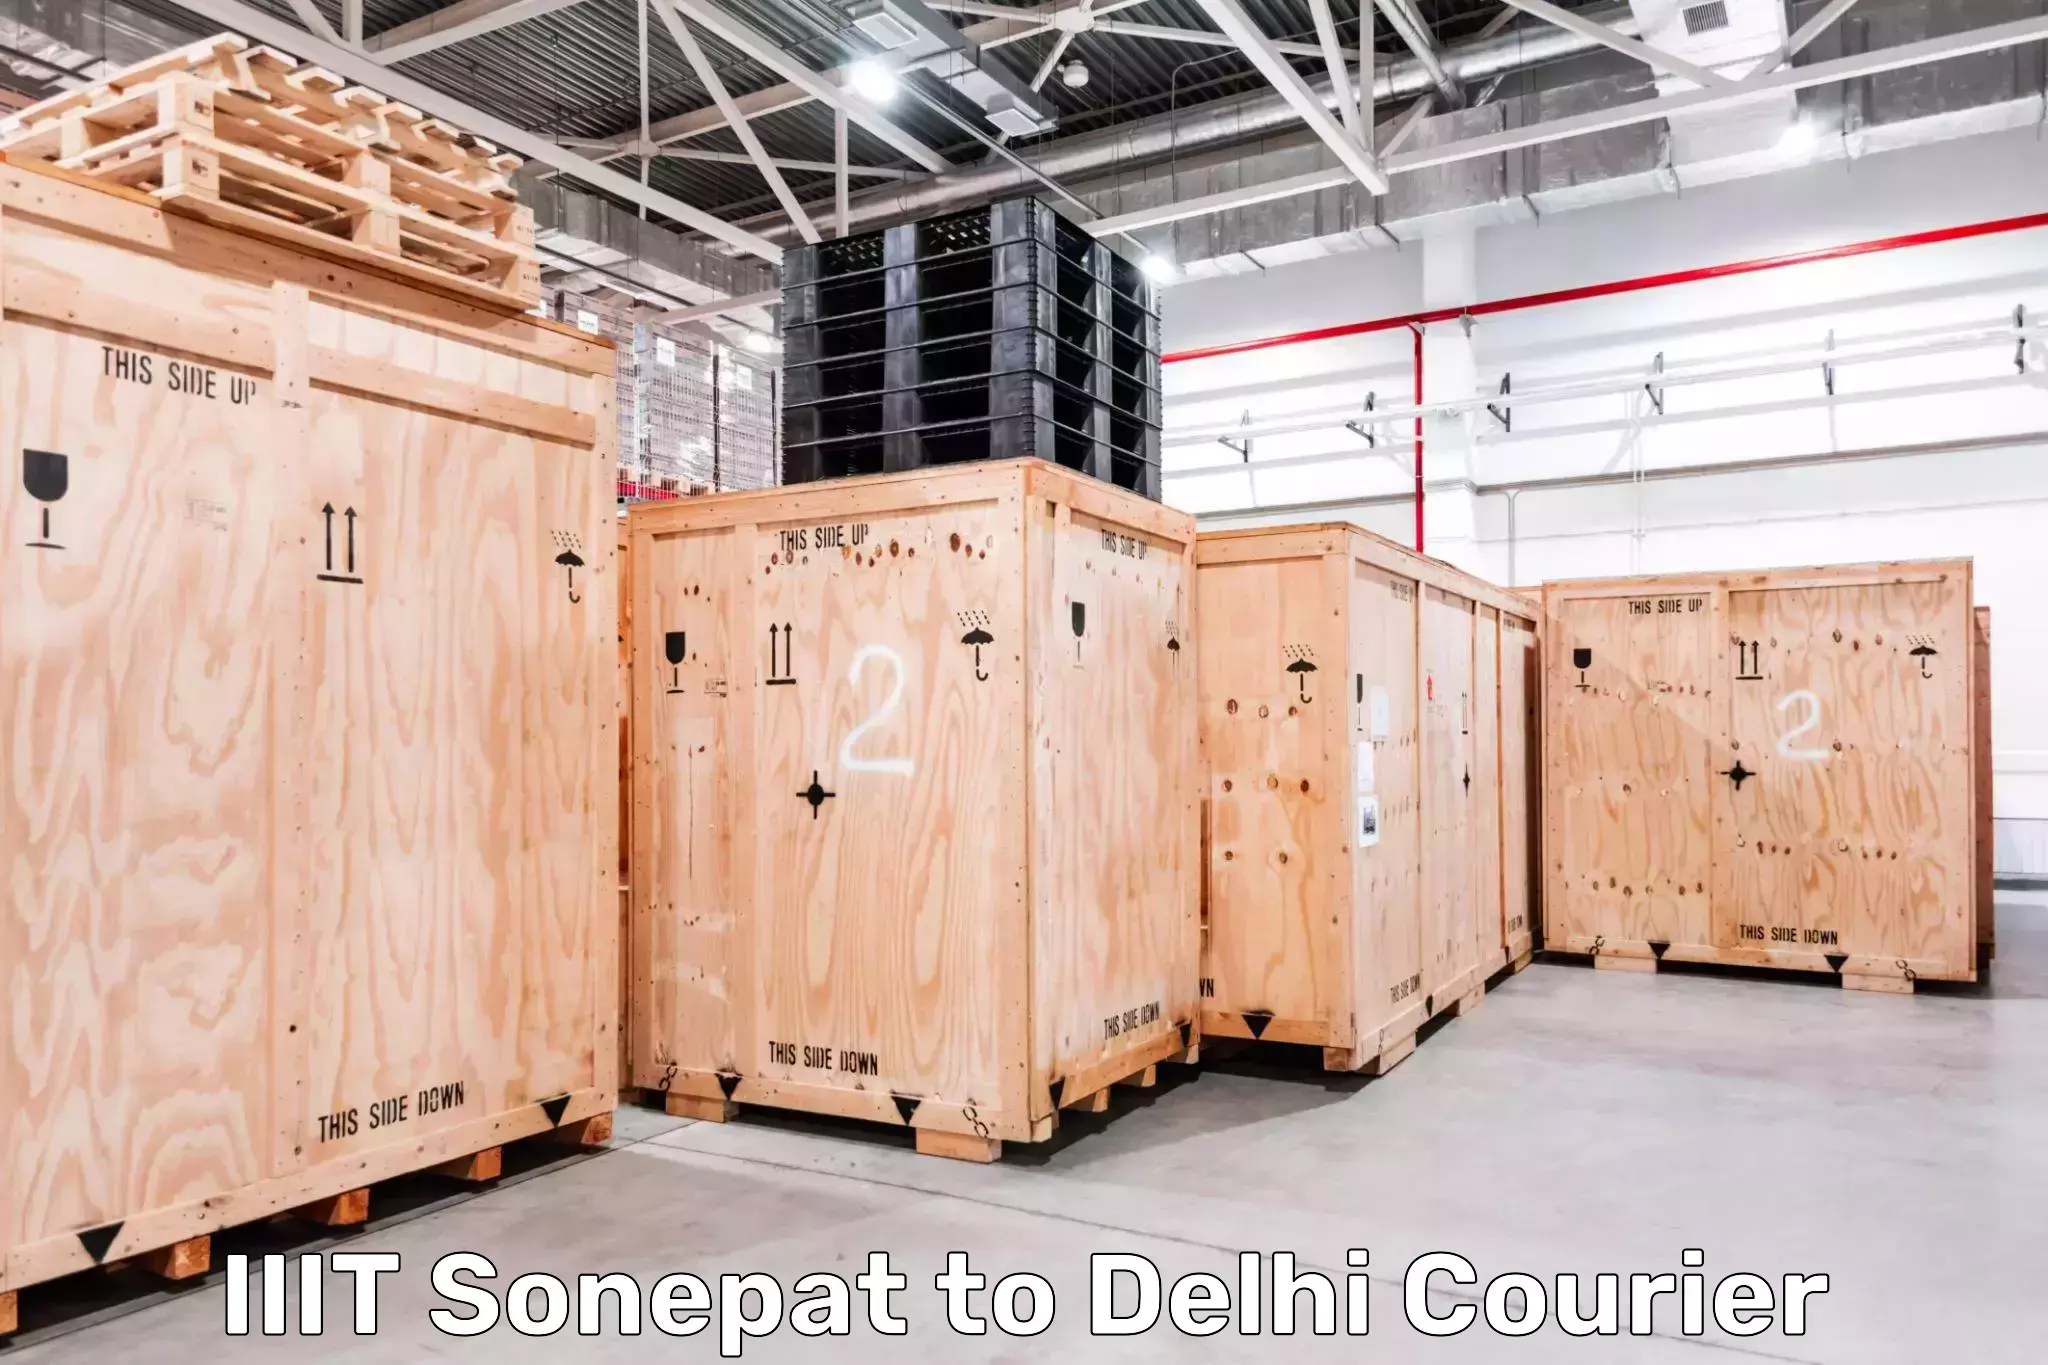 Postal and courier services IIIT Sonepat to IIT Delhi